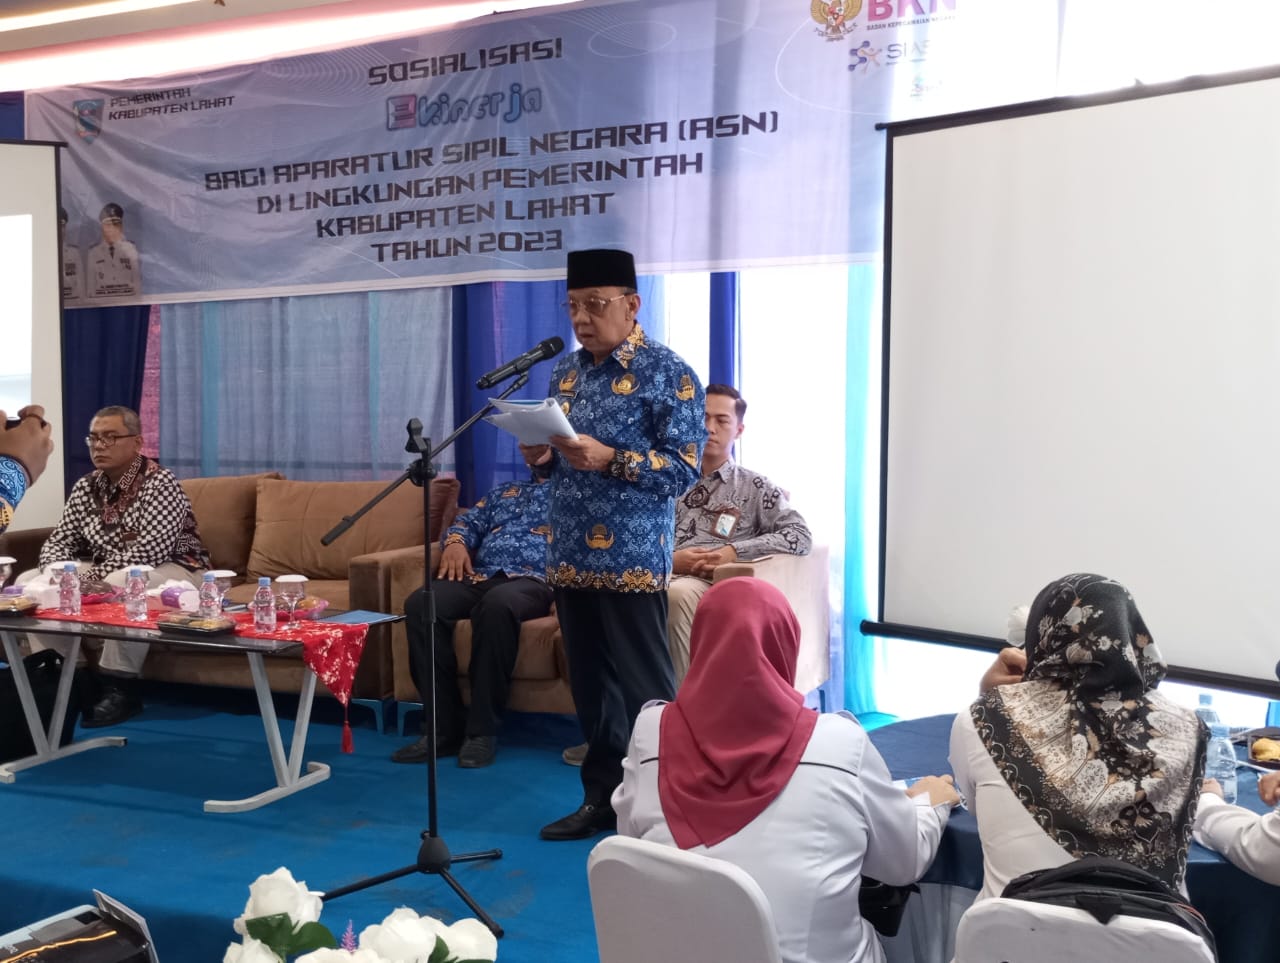 Sosialisasi Aplikasi E Kinerja Bagi ASN, ini Harapan Wakil Bupati Lahat H Haryanto 